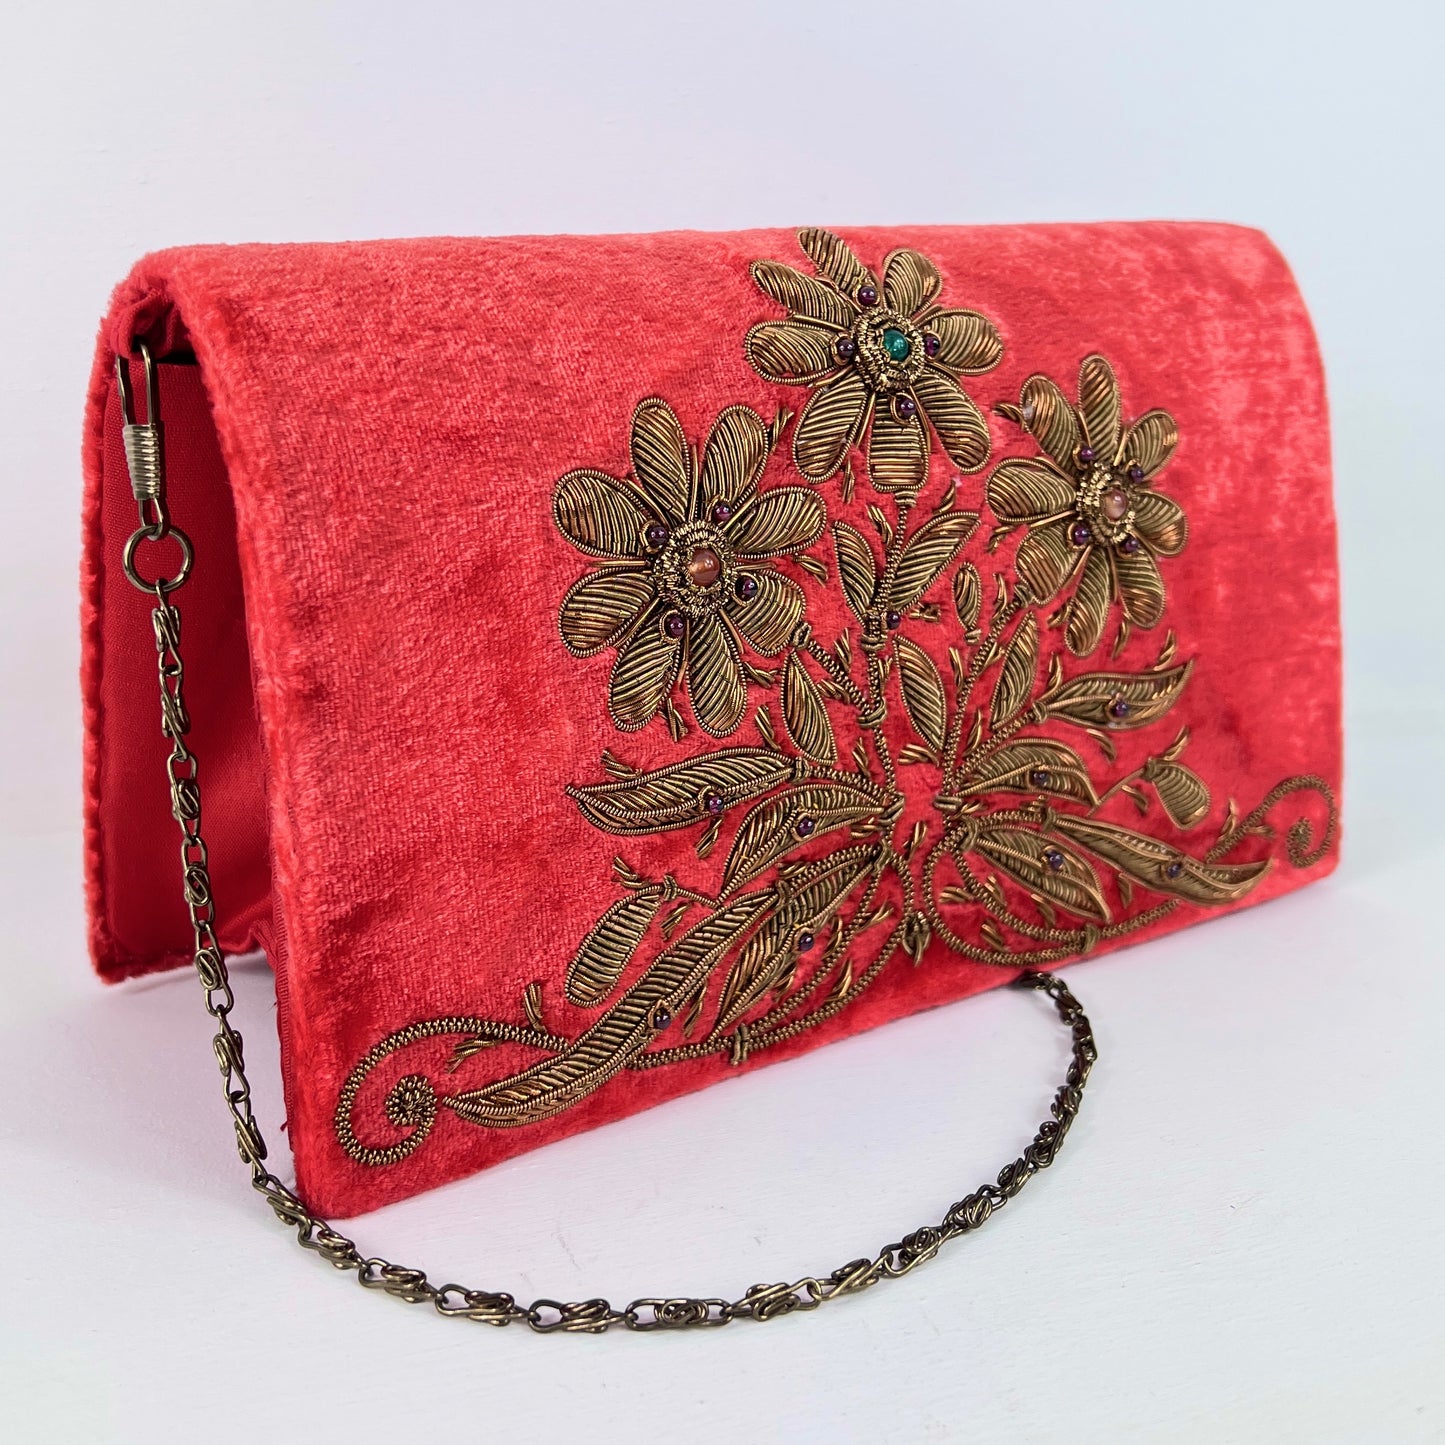 The Lavishly Embroidered Velvet Handbag in Red